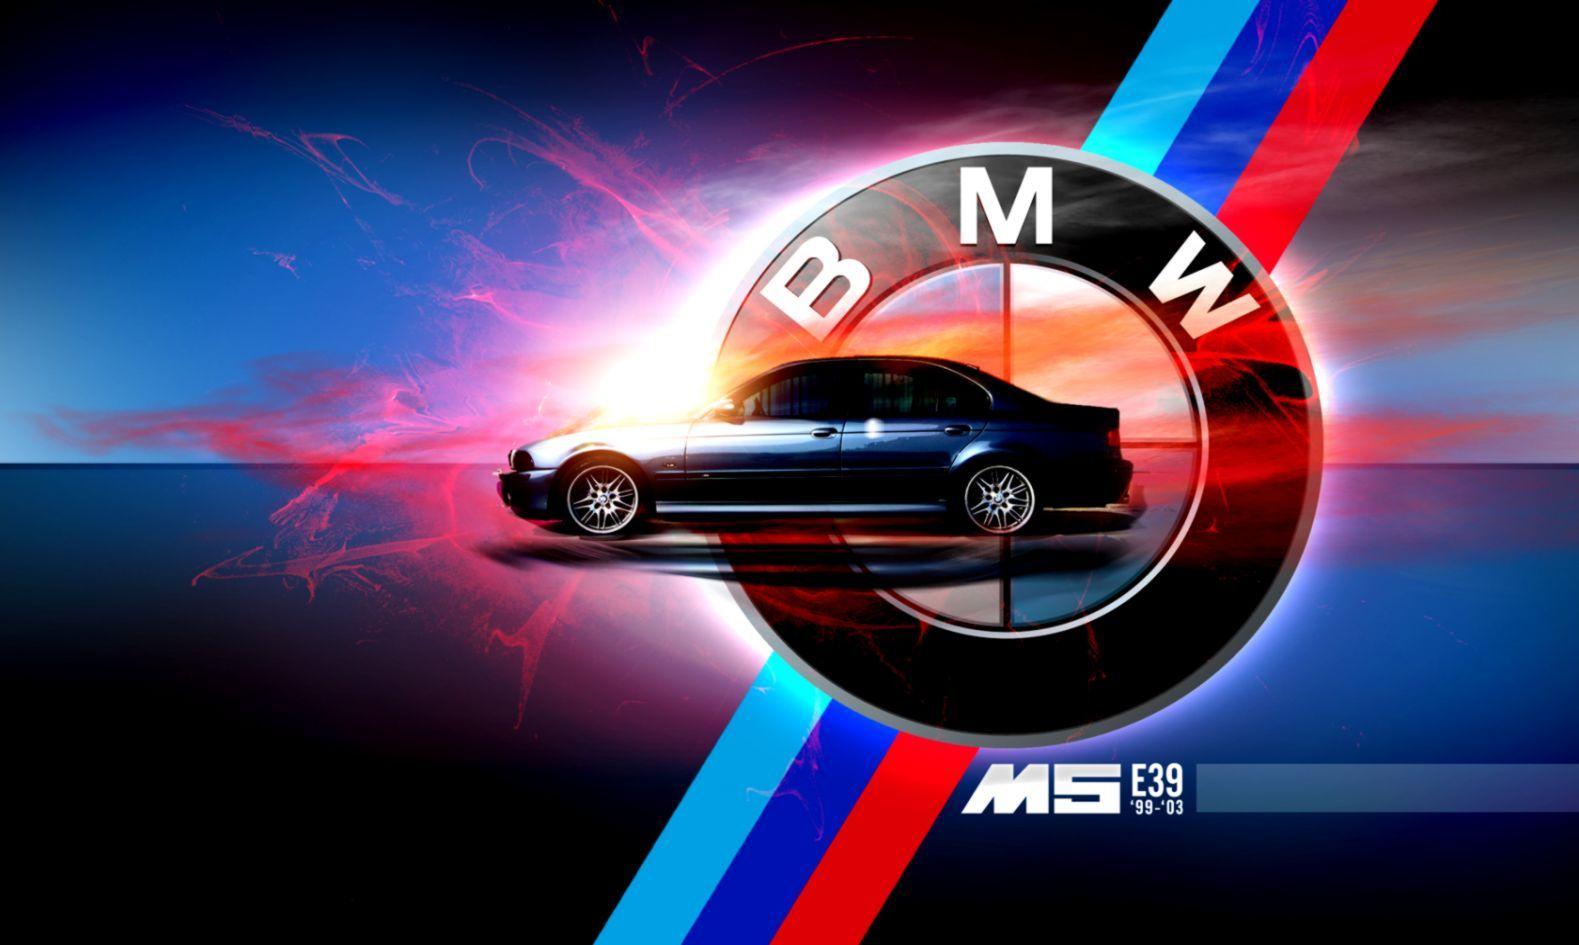 BMW M Sport Logo - Pin by Seila on BMW | Pinterest | BMW, Bmw cars and BMW M5